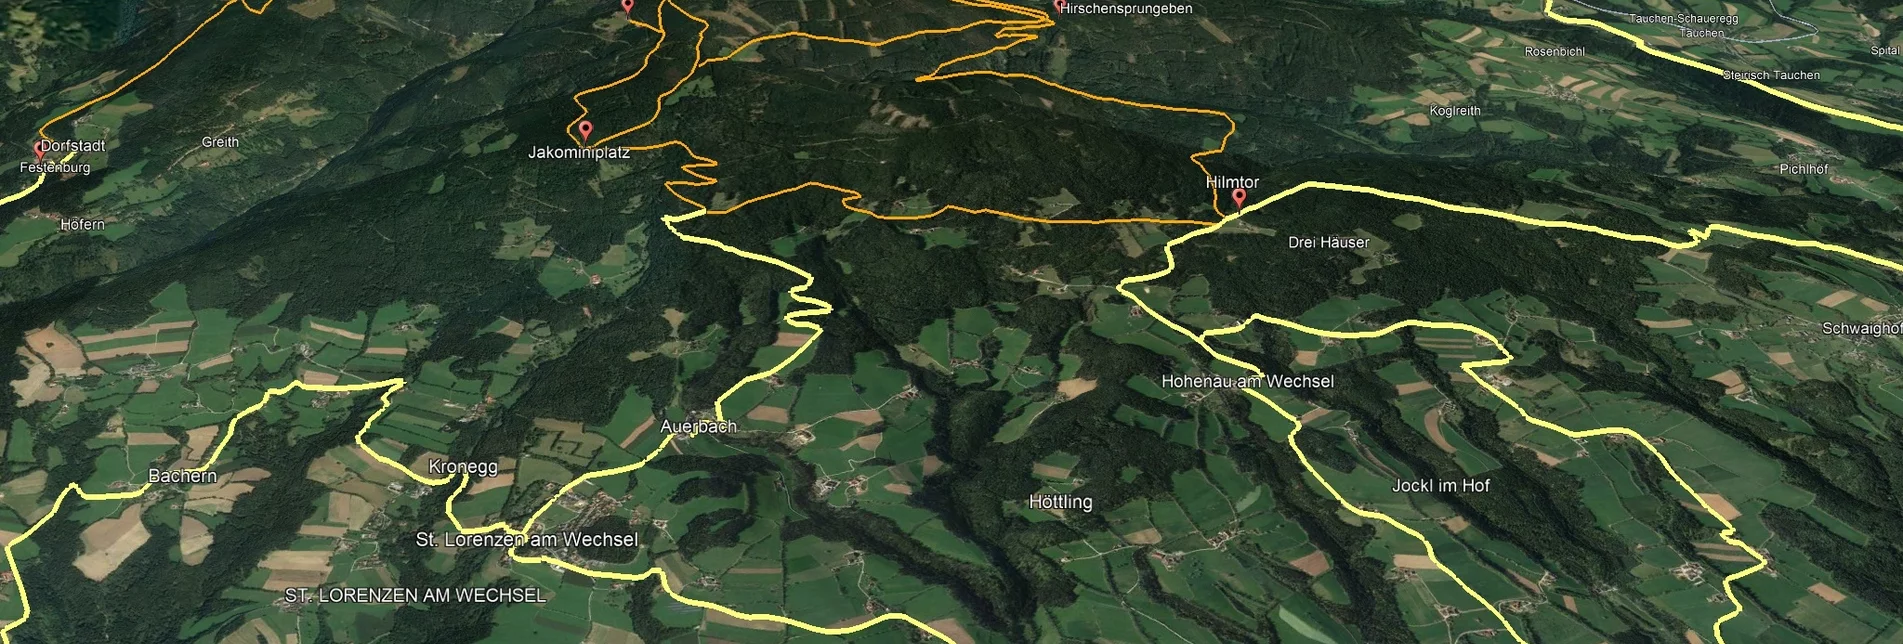 Mountain Biking PREVIEW Styrian Wexl Trails - Jakominiweg Route - Touren-Impression #1 | © Verein Tourismusentwicklung Steirischer Wechsel